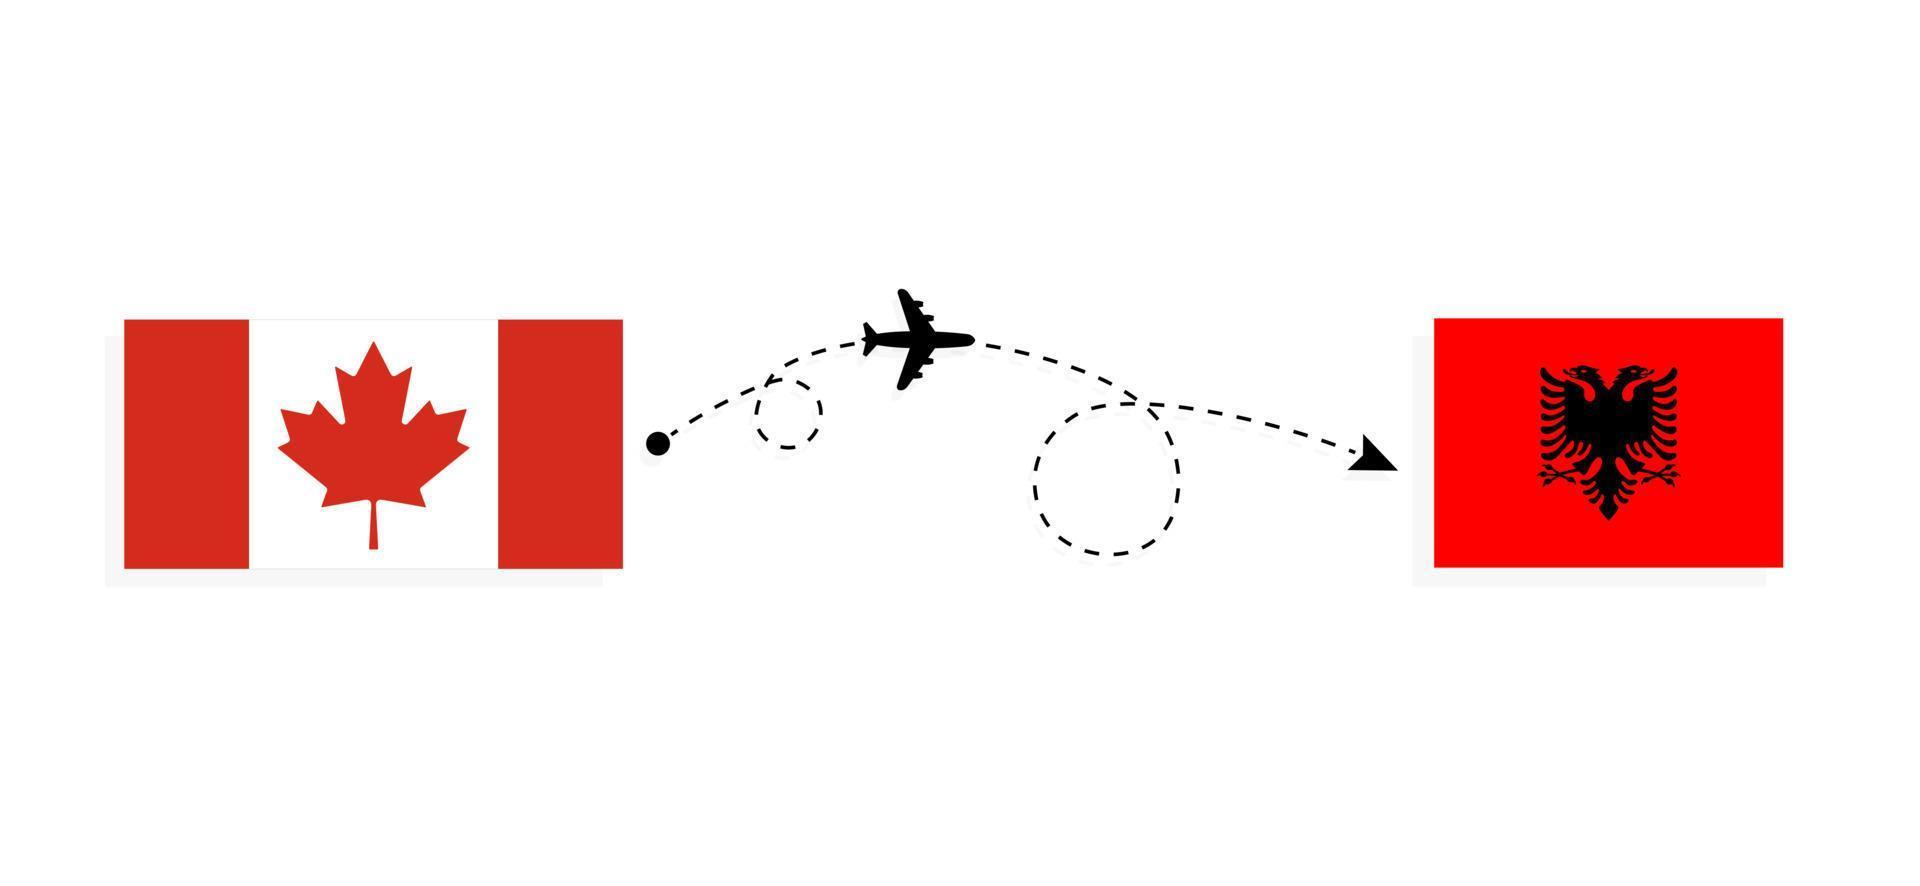 vol et voyage du canada à l'albanie par concept de voyage en avion de passagers vecteur